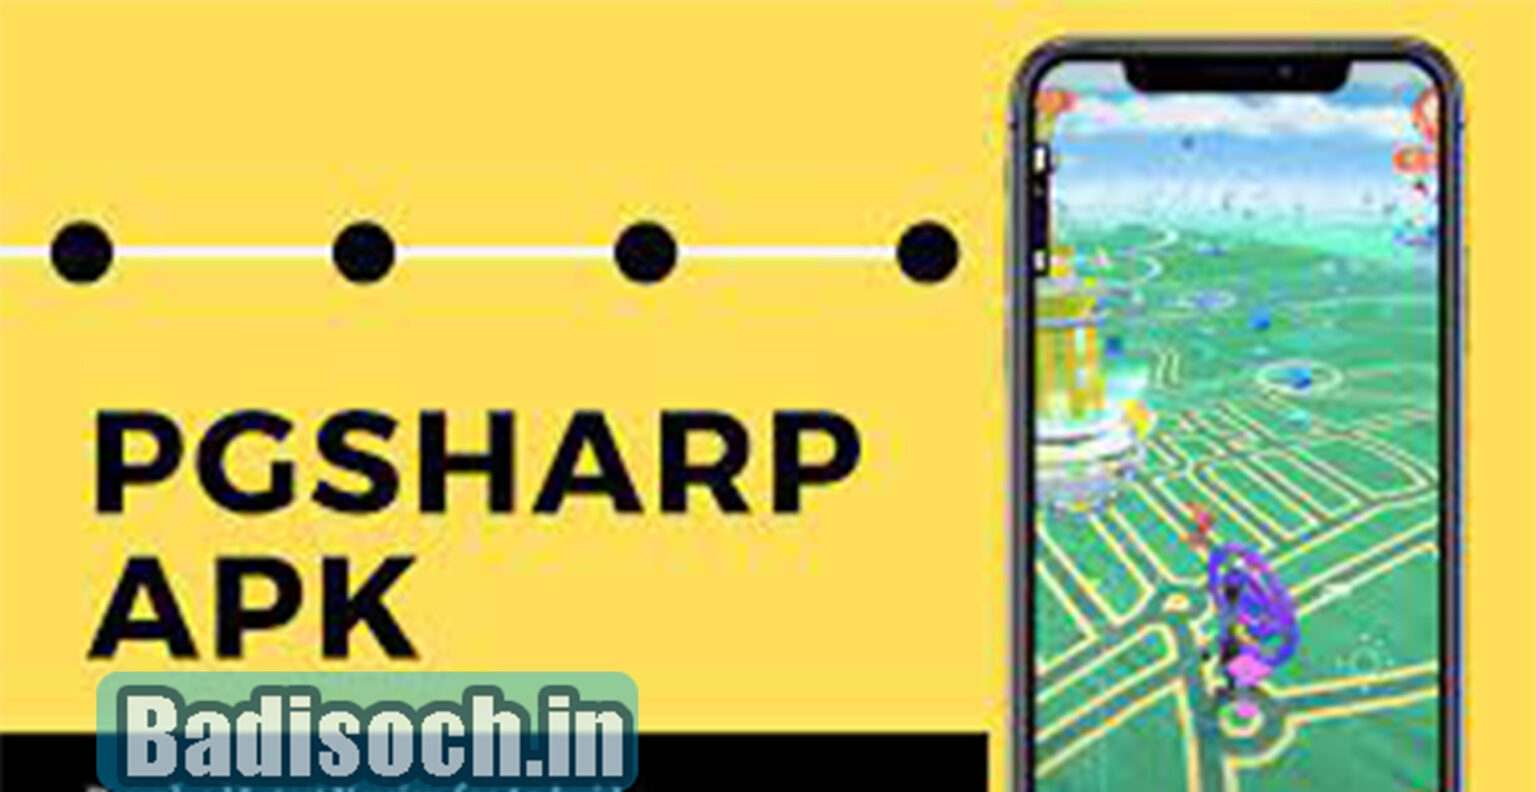 pgsharp app download